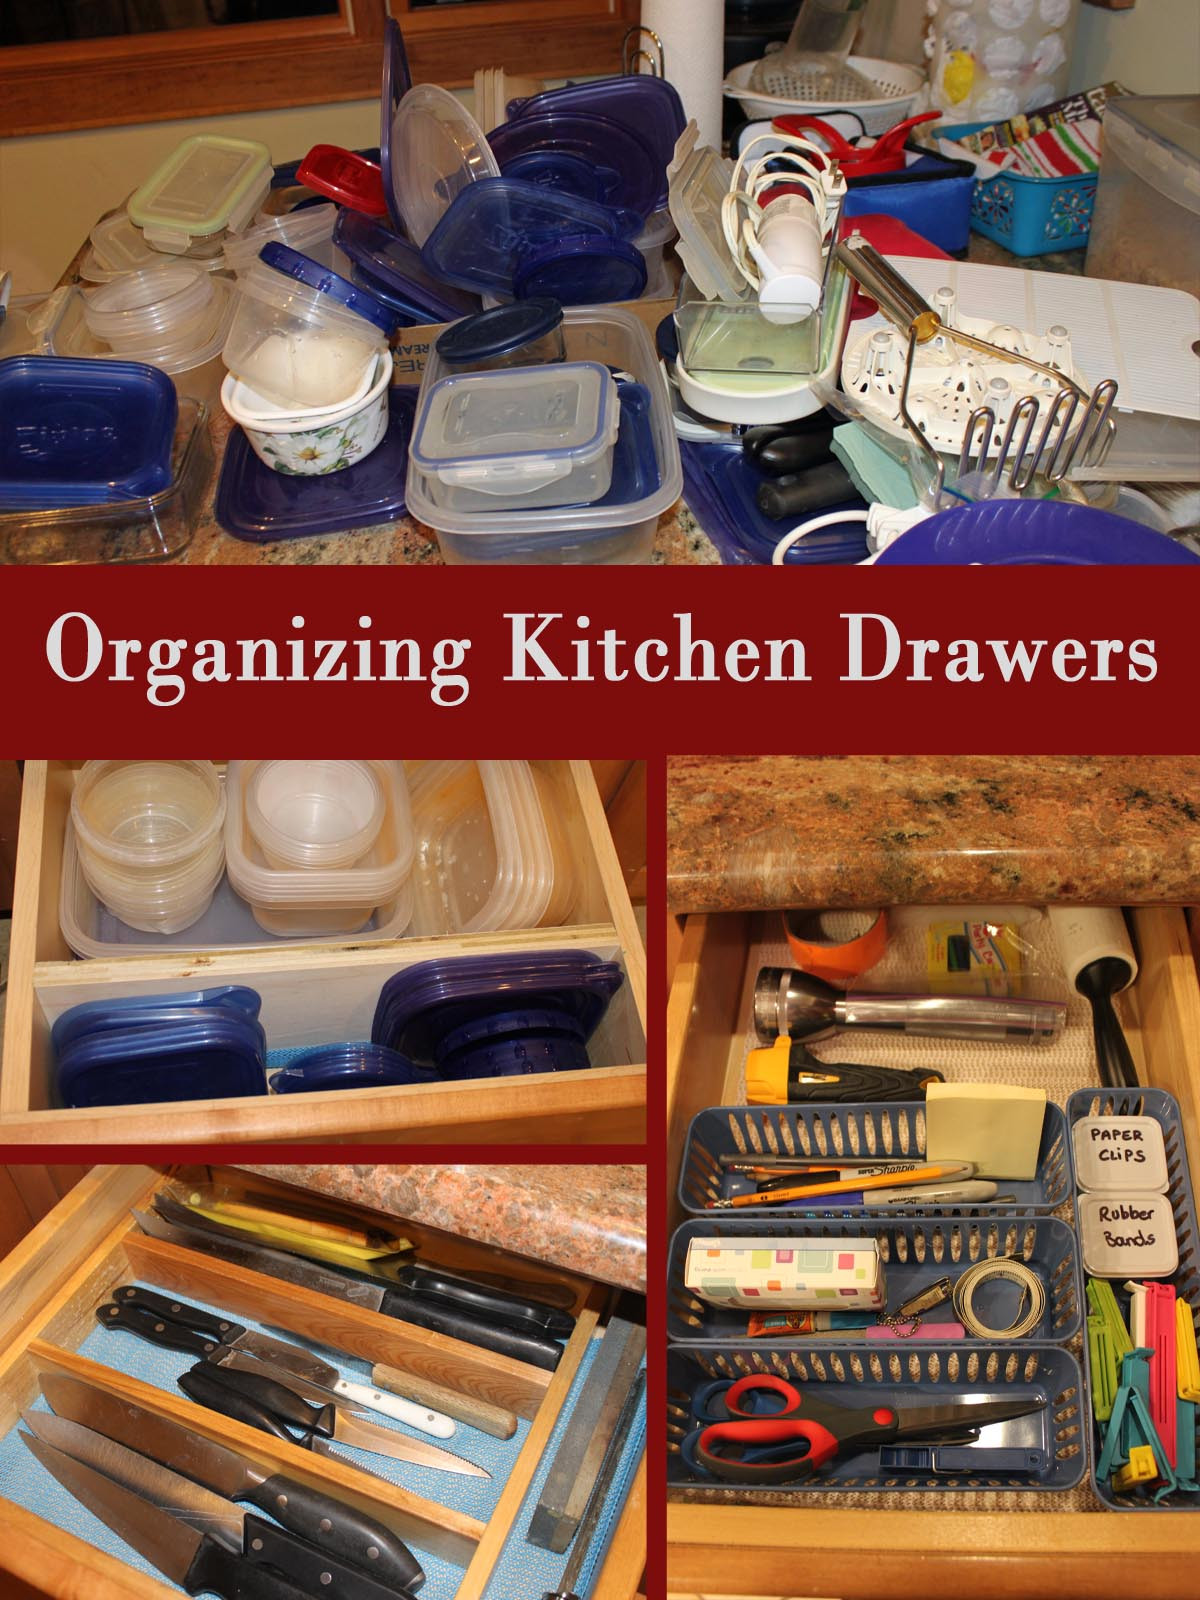 Kitchen Drawer Organizing
 My Great Challenge Organizing Kitchen Drawers